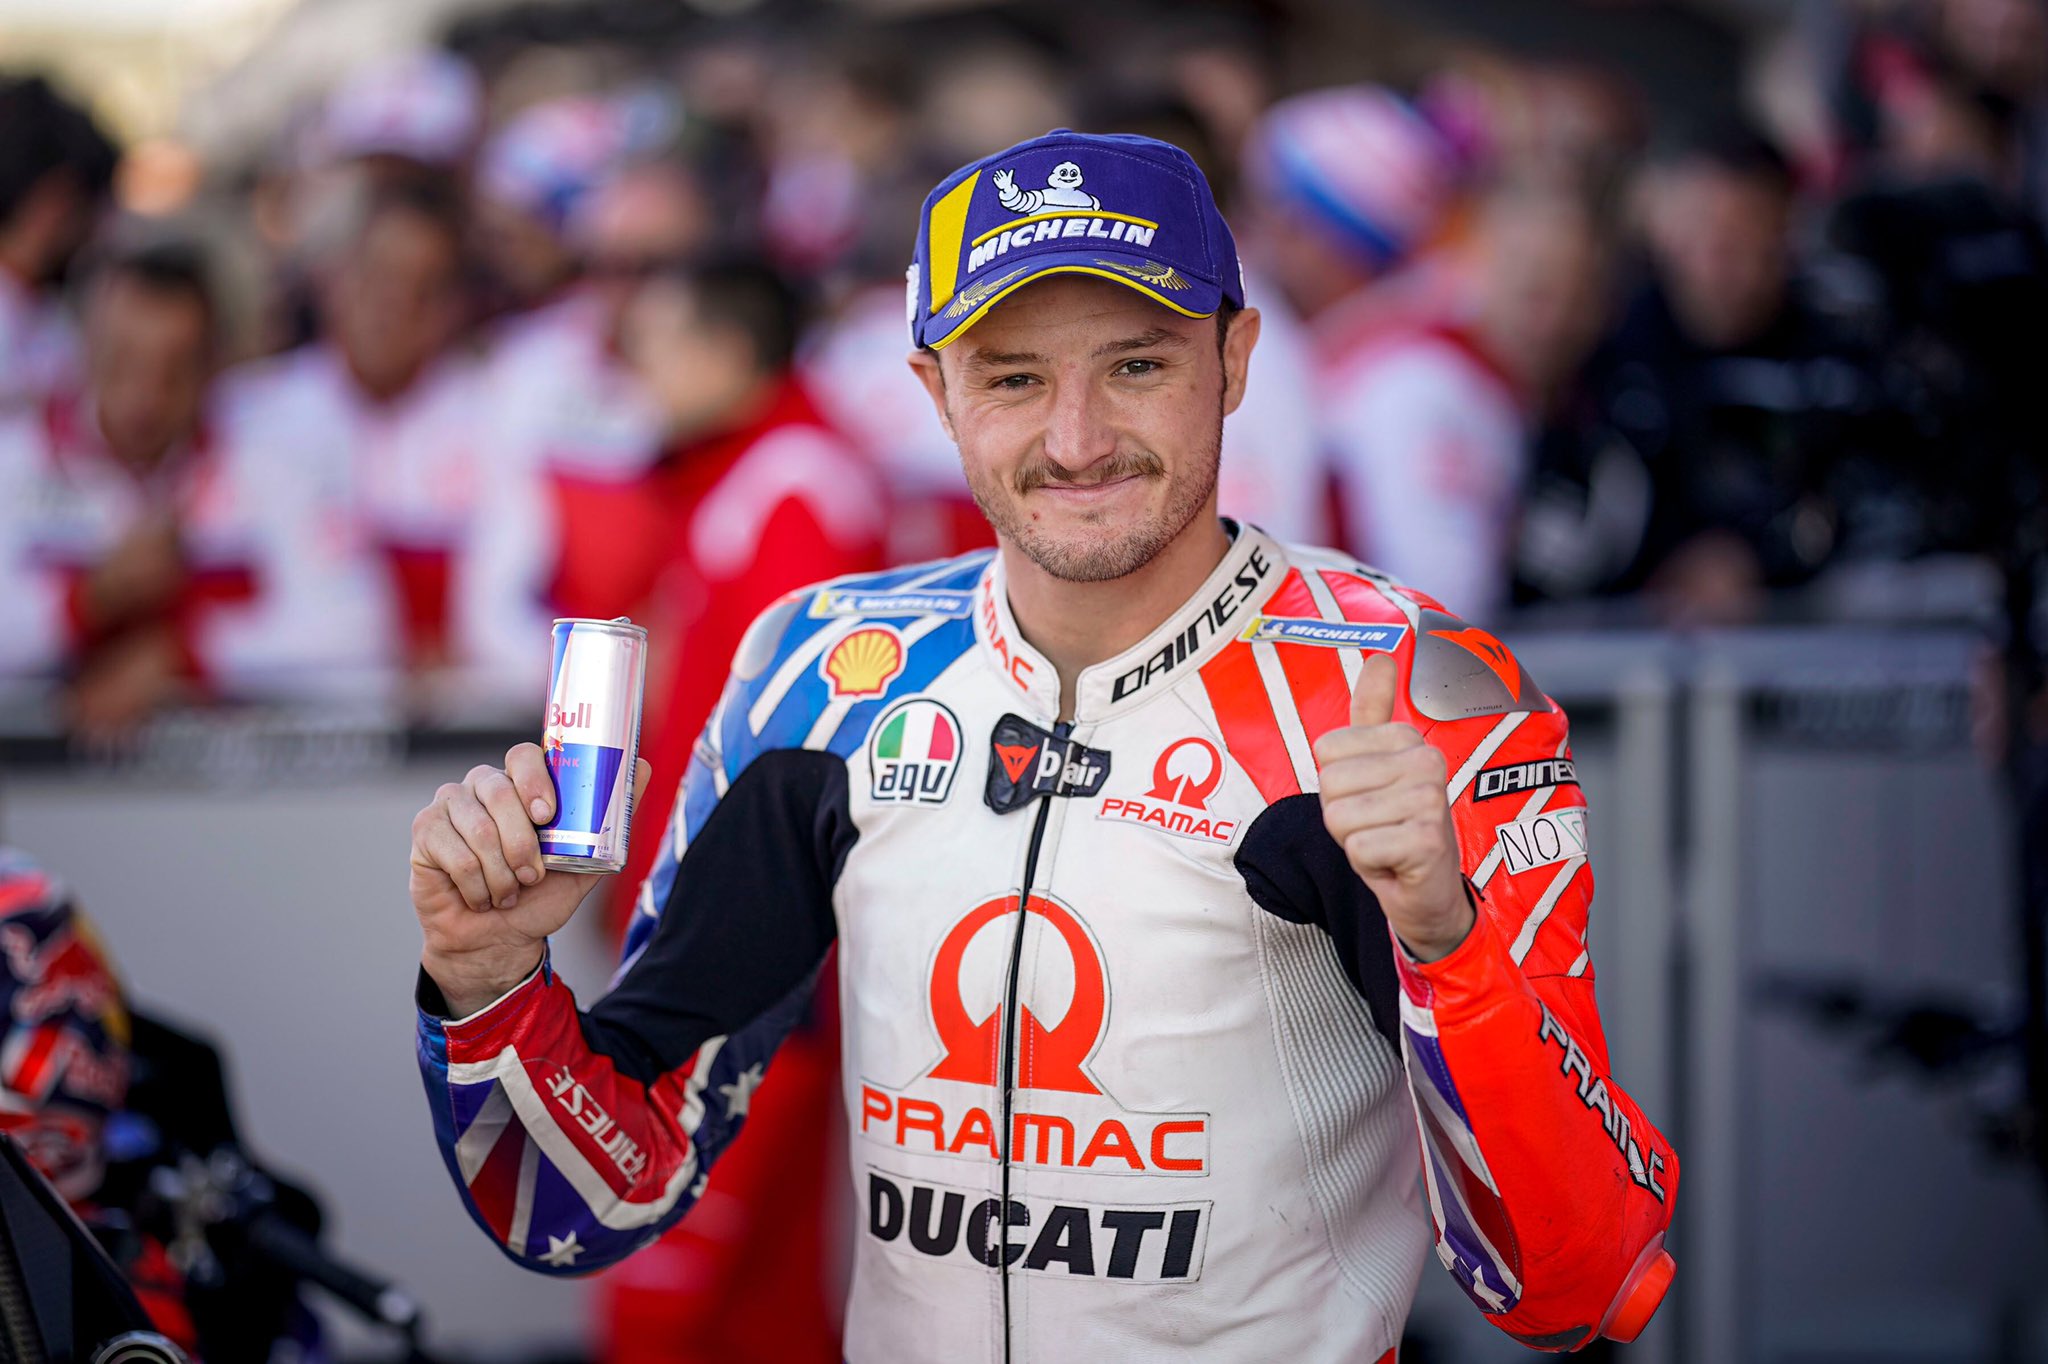 Bersama Ducati, Jack Miller Yakin Bisa Saingi Marc Marquez